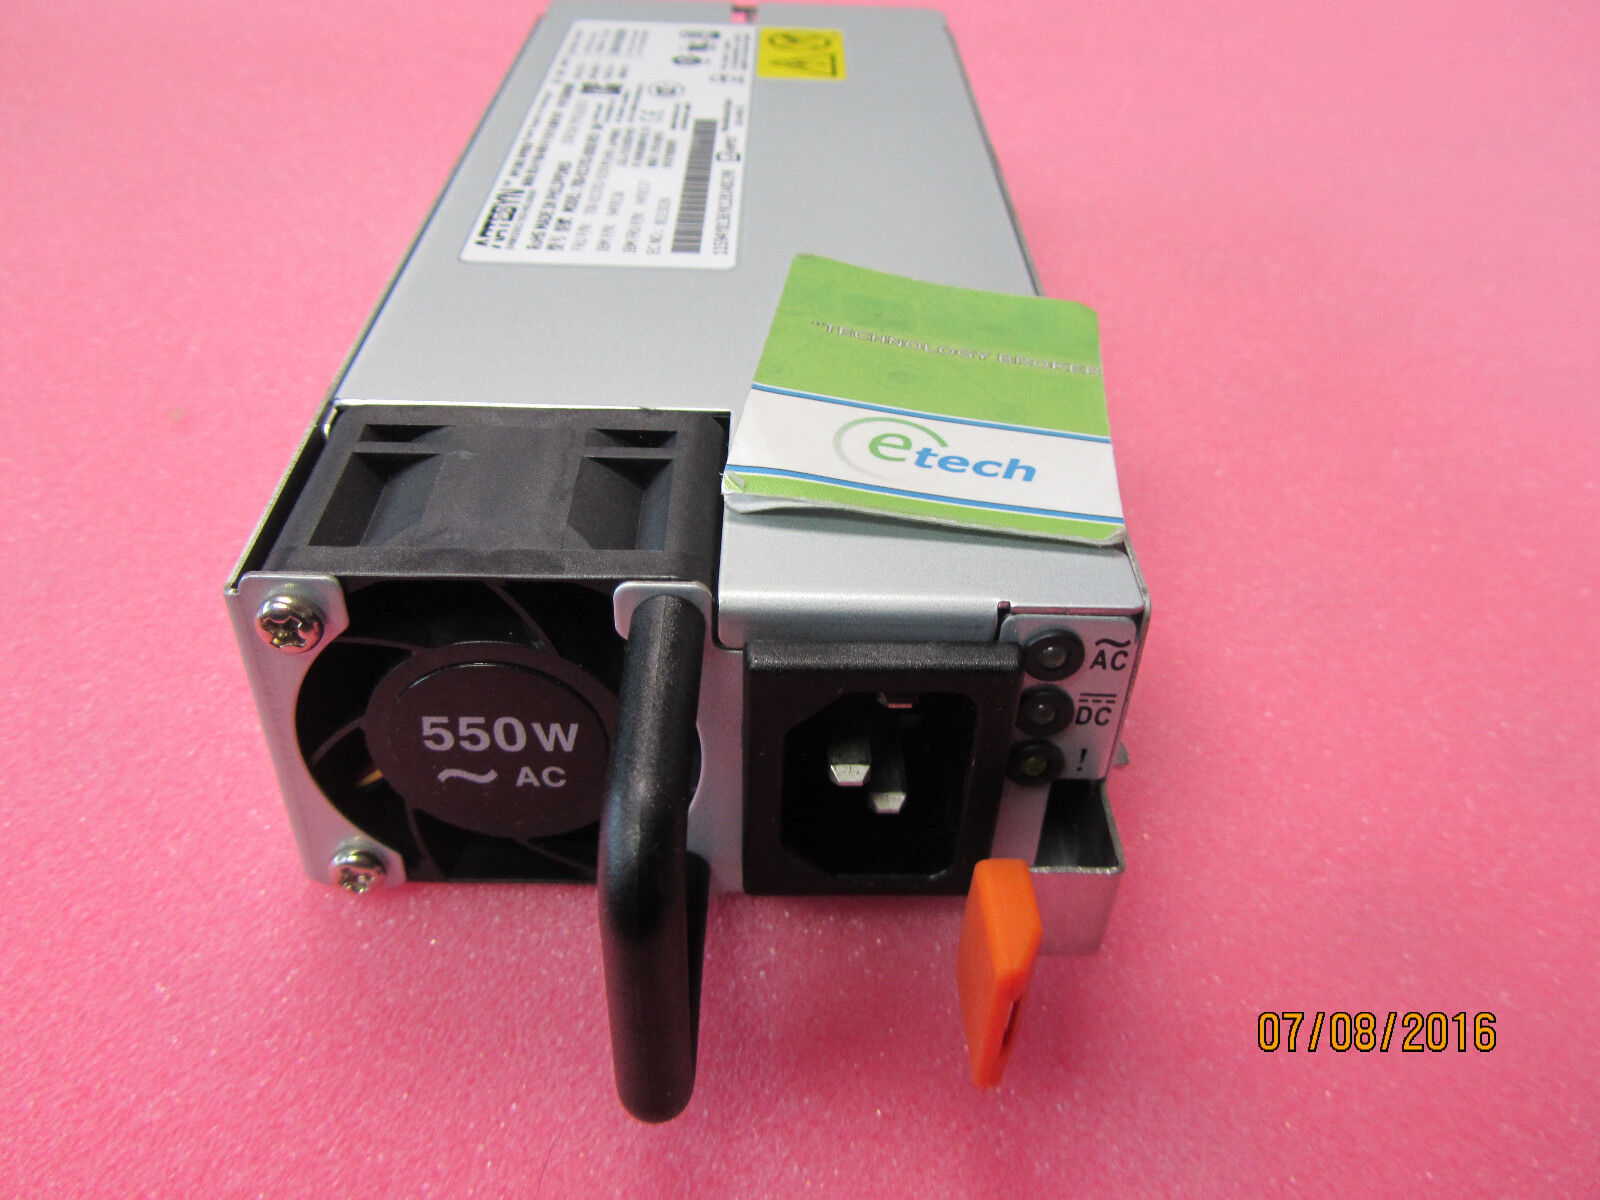 00FK930/ 94Y8139- IBM 550 W AC Power Supply for System x3550M5, x3650M5, x3500M5